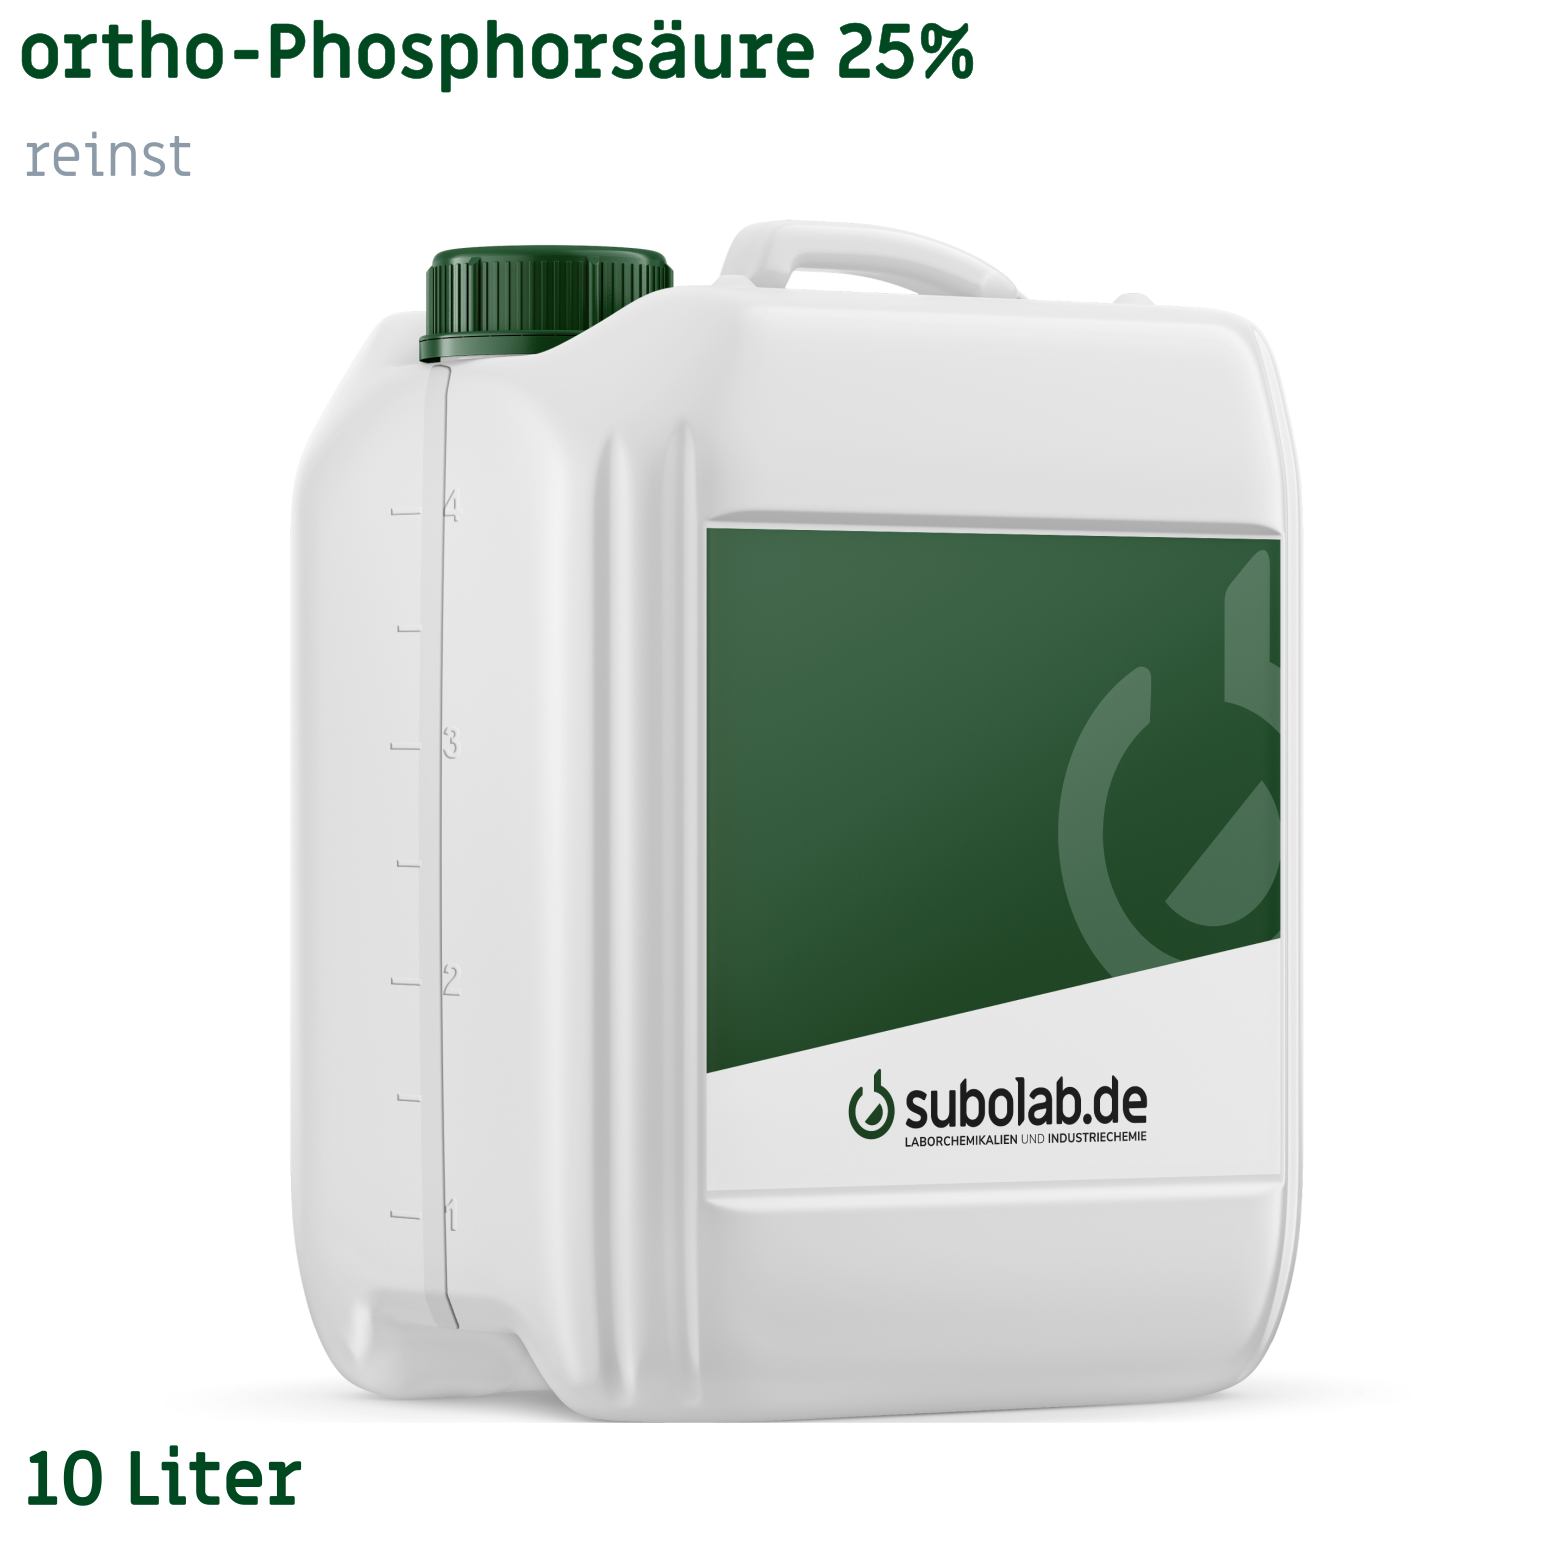 Bild von ortho-Phosphorsäure 25% reinst (10 Liter)